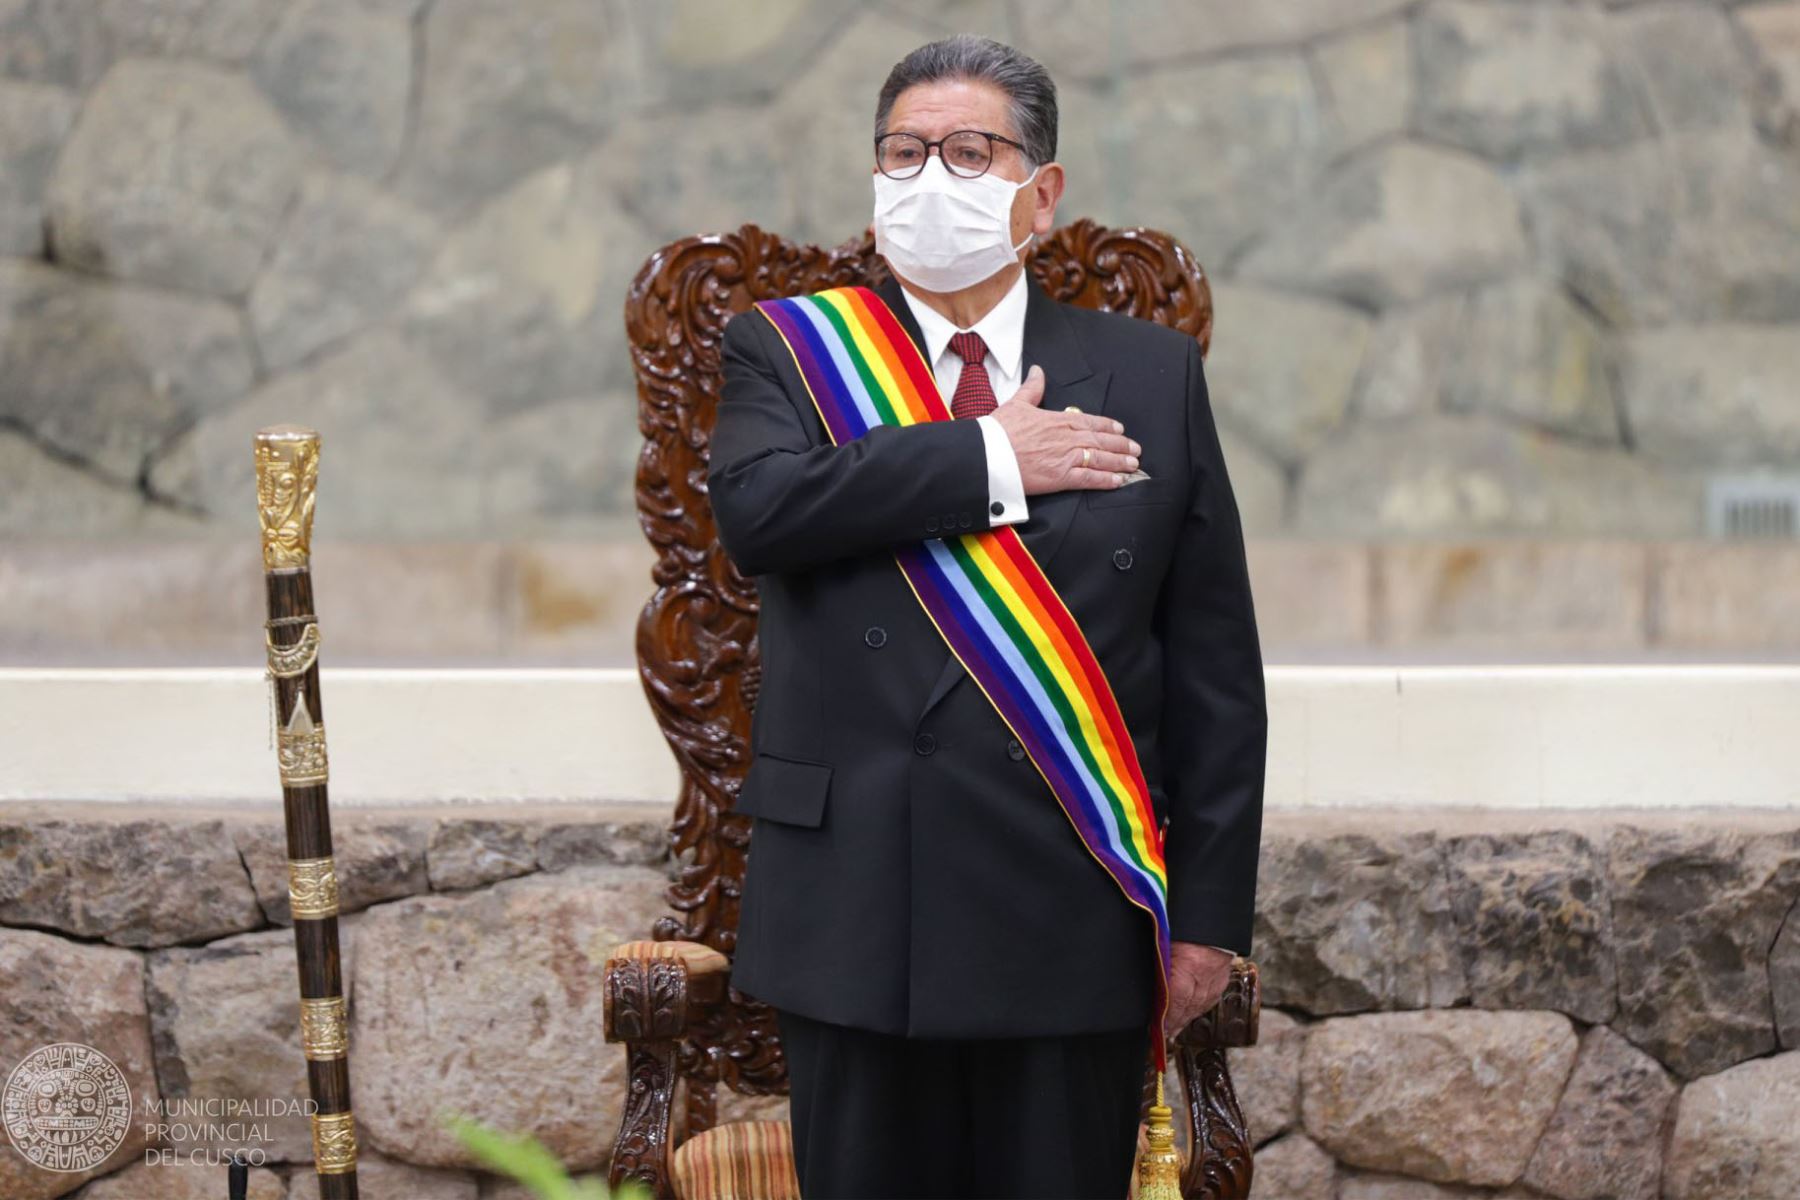 La Municipalidad Provincial del Cusco expresó su  profundo pesar por el sensible fallecimiento de su alcalde y hace llegar a su distinguida familia las más sentidas condolencias. ANDINA/Difusión